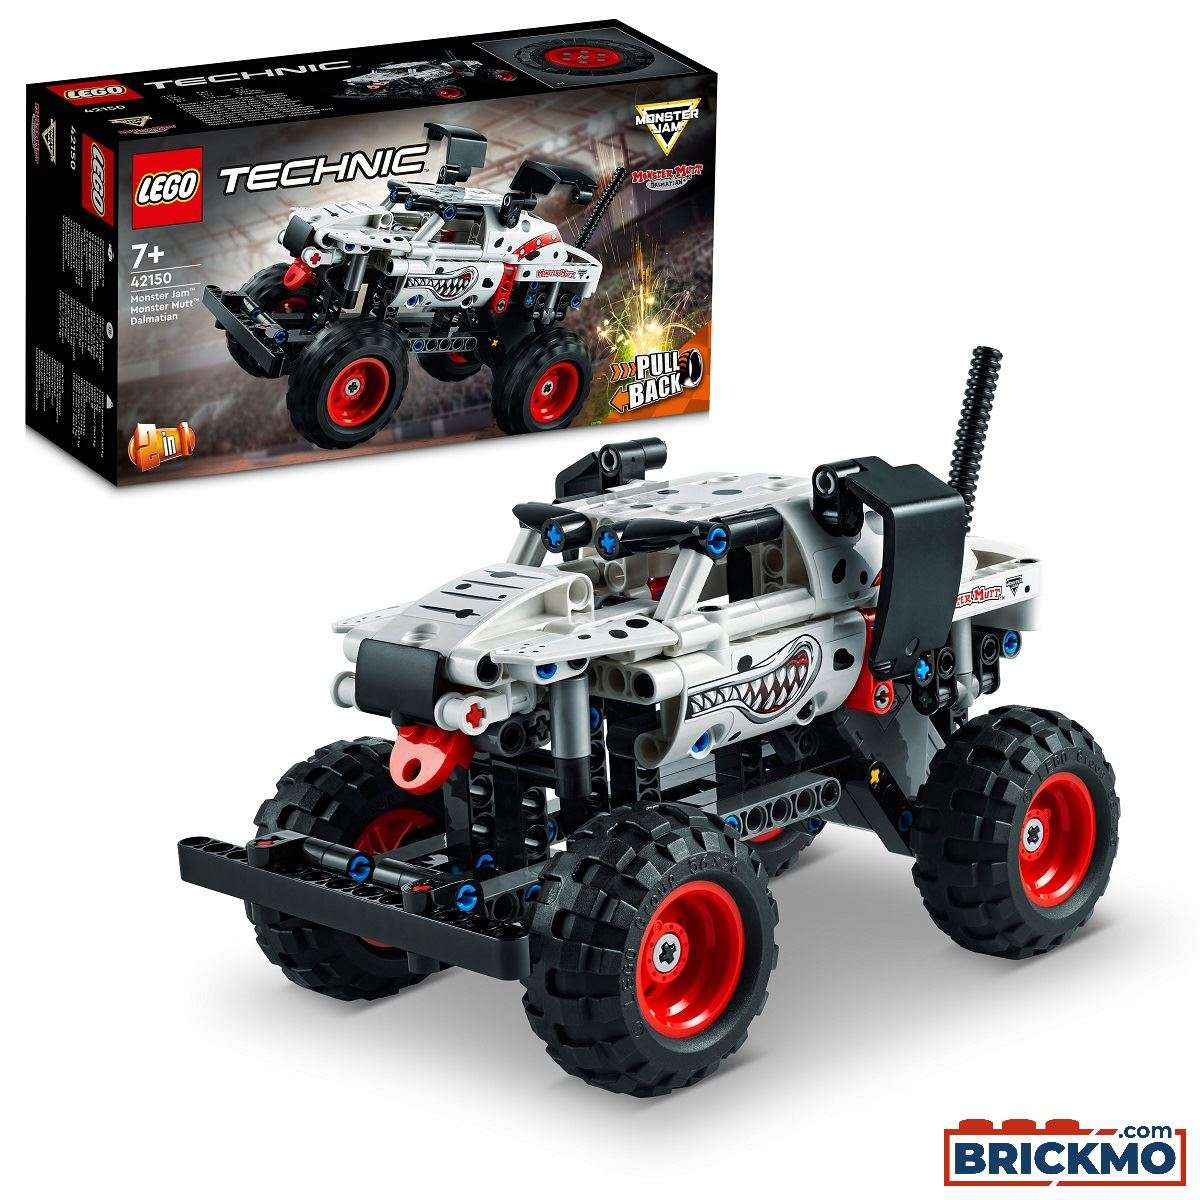 LEGO Technic 42150 Monster Jam Monster Mutt Dalmatian 42150